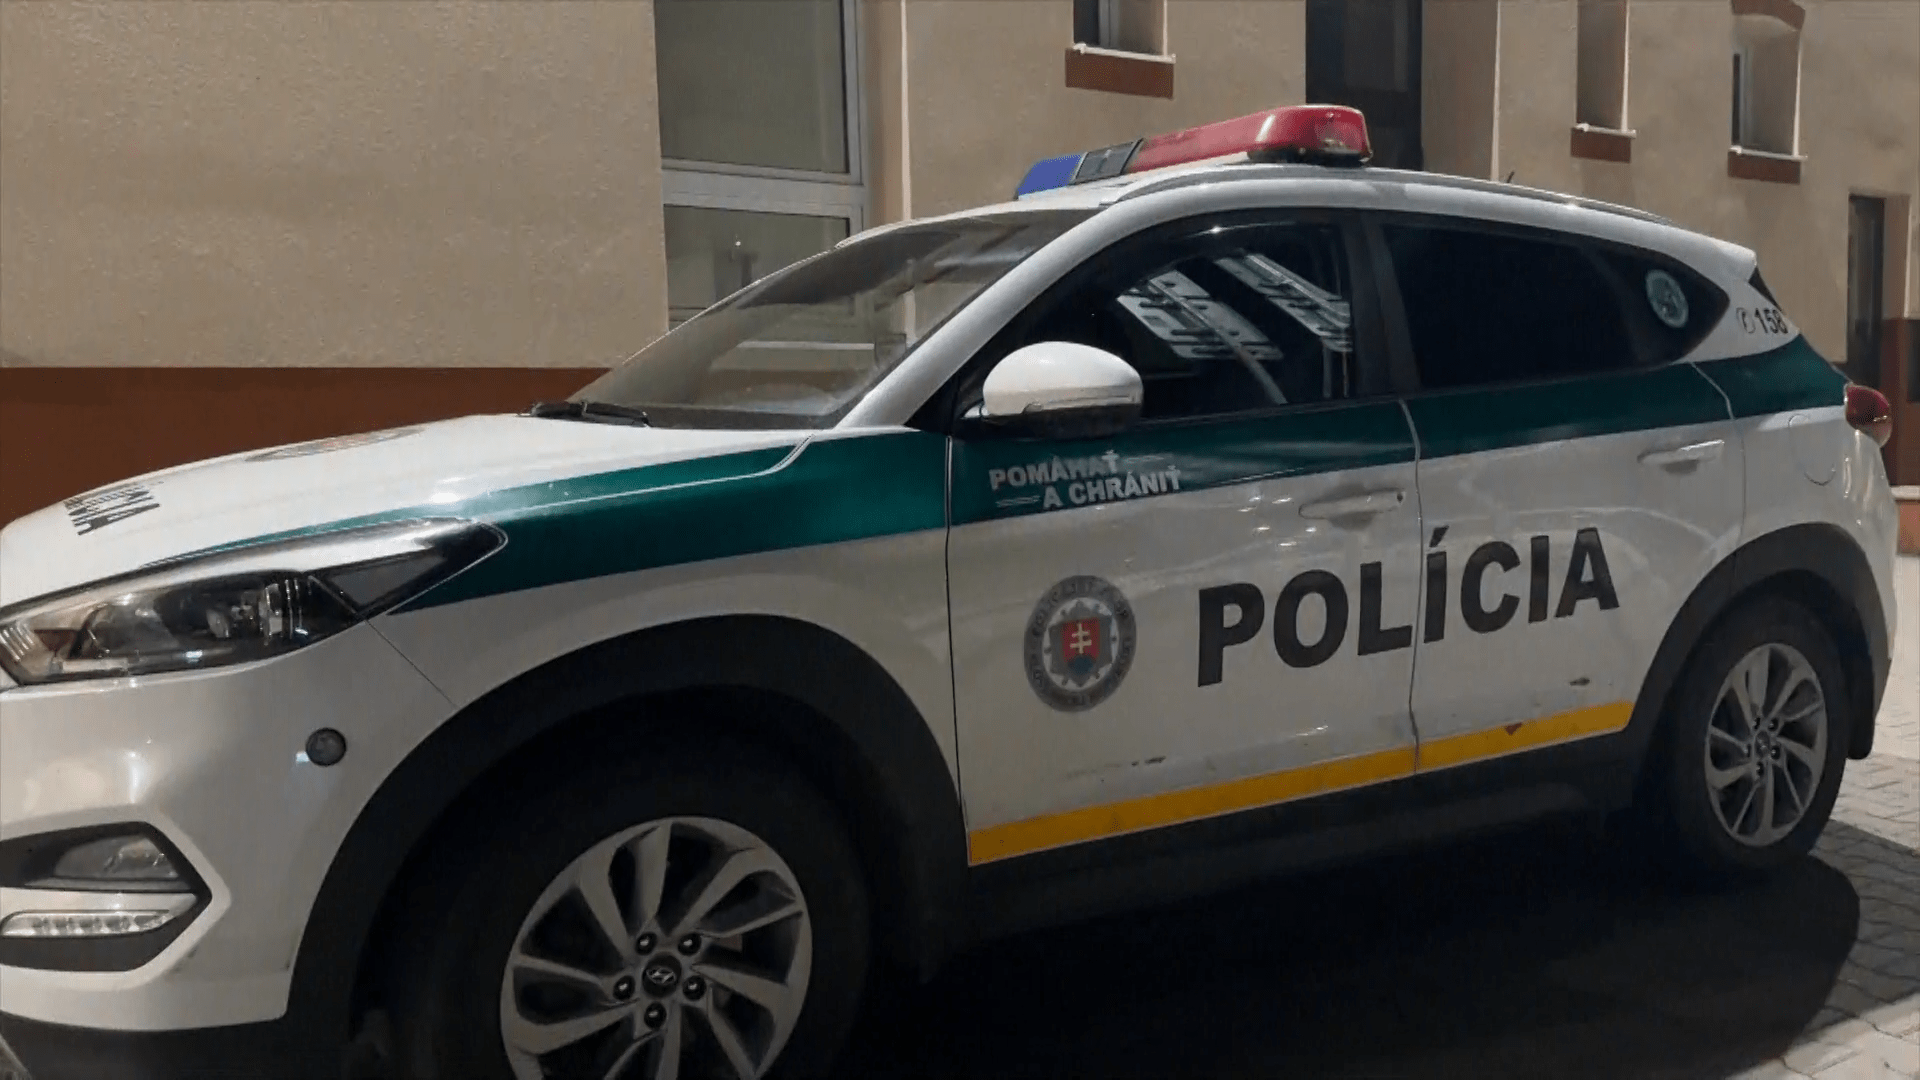 Bratislavská policie zadržela exhibicionistu. (Ilustrační foto)